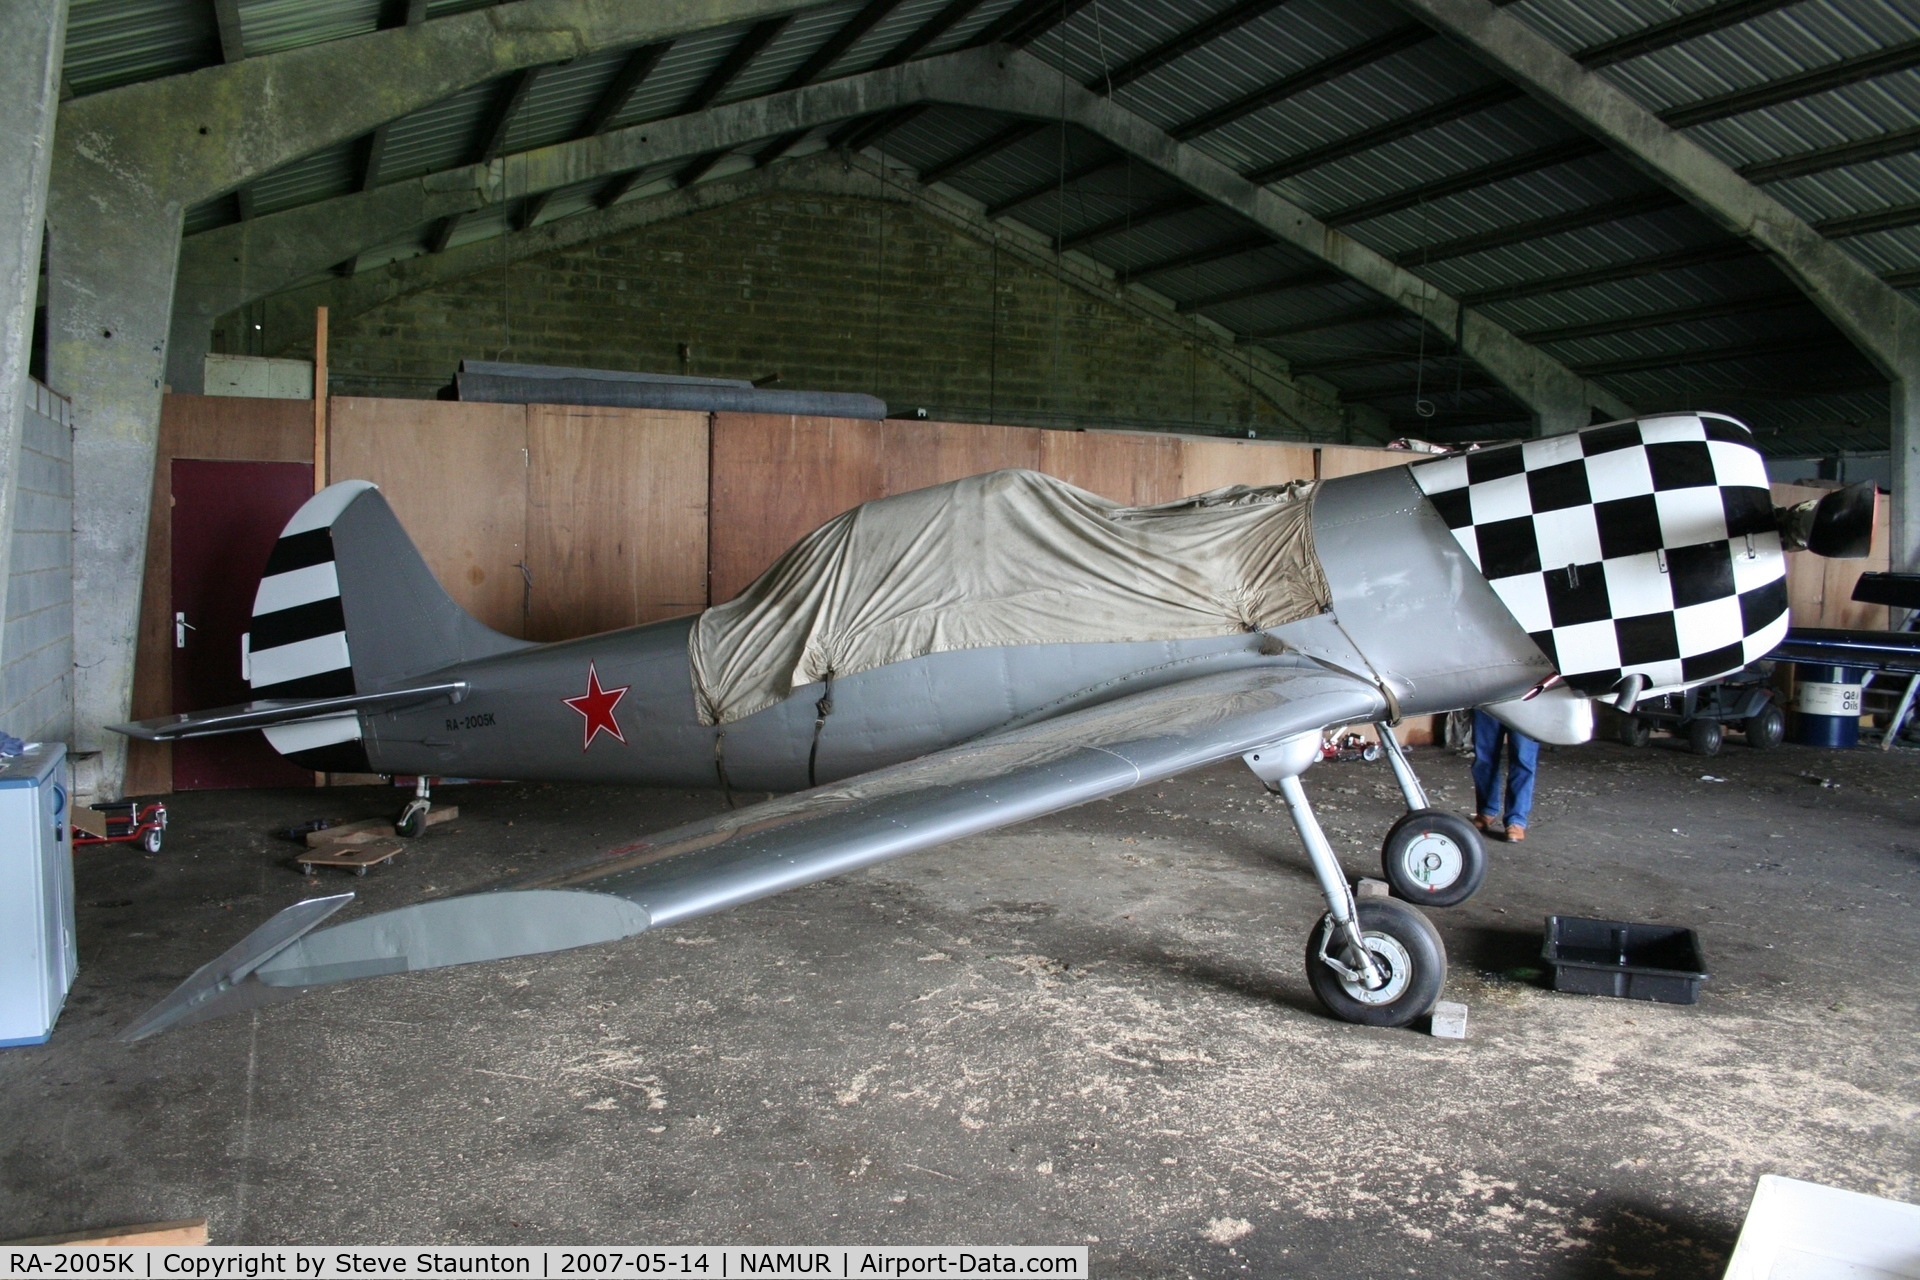 RA-2005K, Yakovlev Yak-50 C/N 801807, Taken on an Aeroprint tour @ Namur